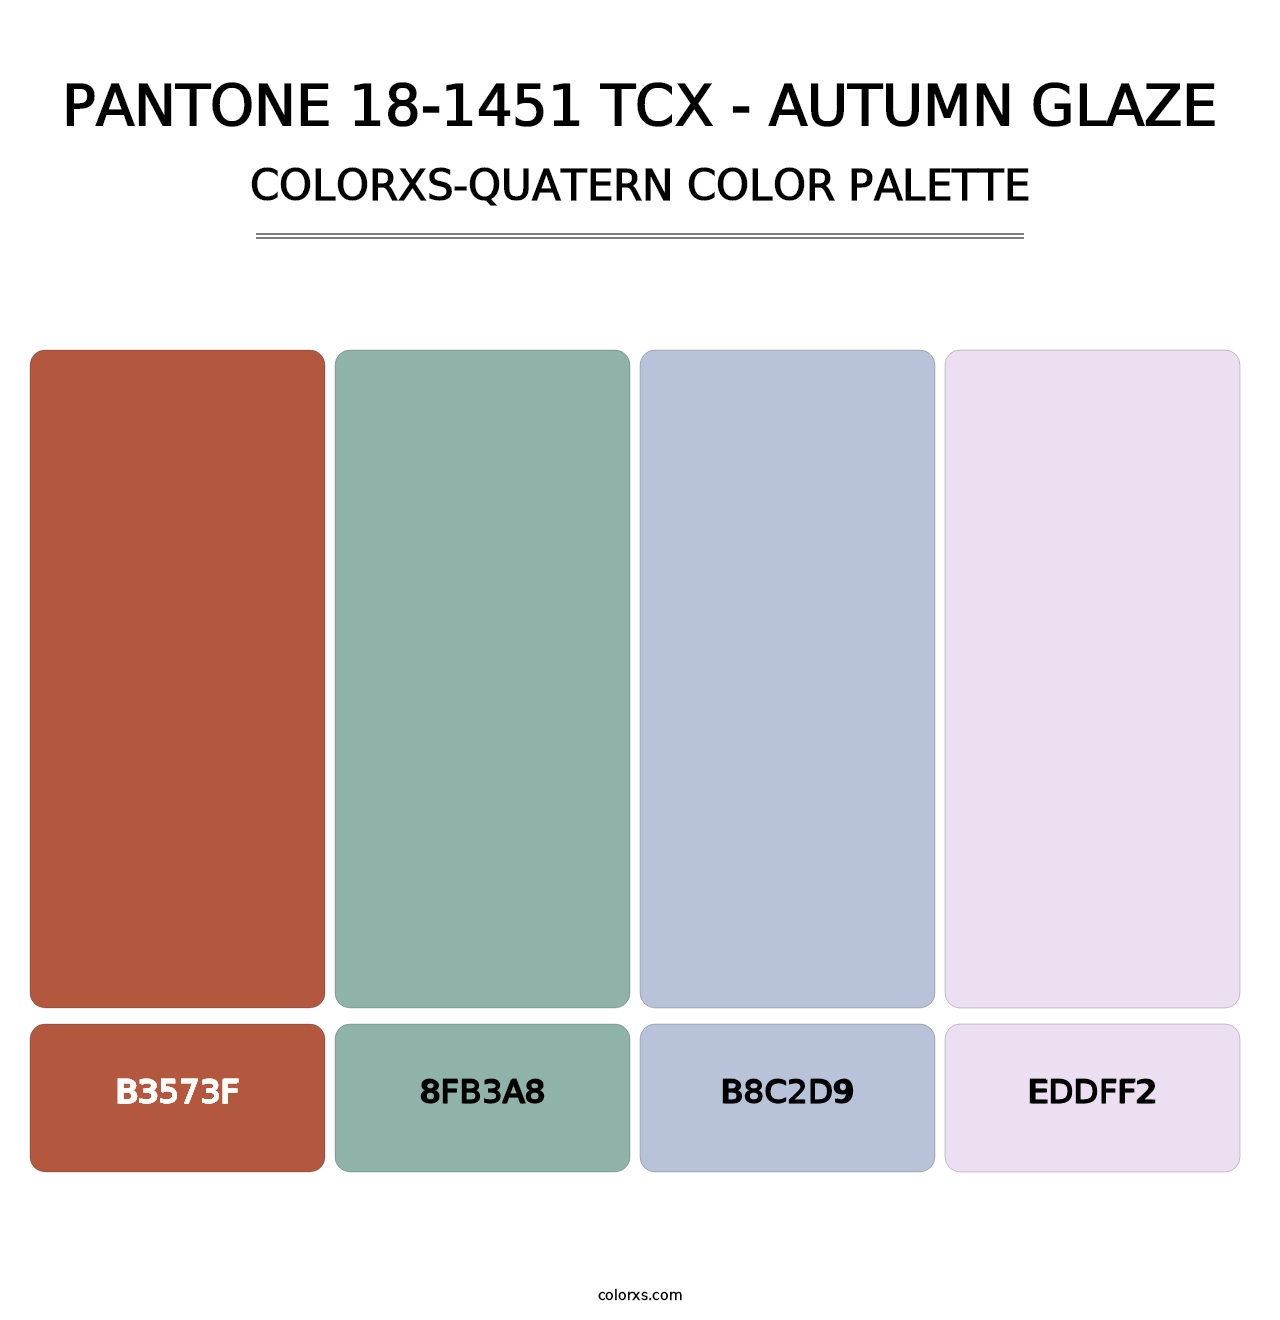 PANTONE 18-1451 TCX - Autumn Glaze - Colorxs Quatern Palette